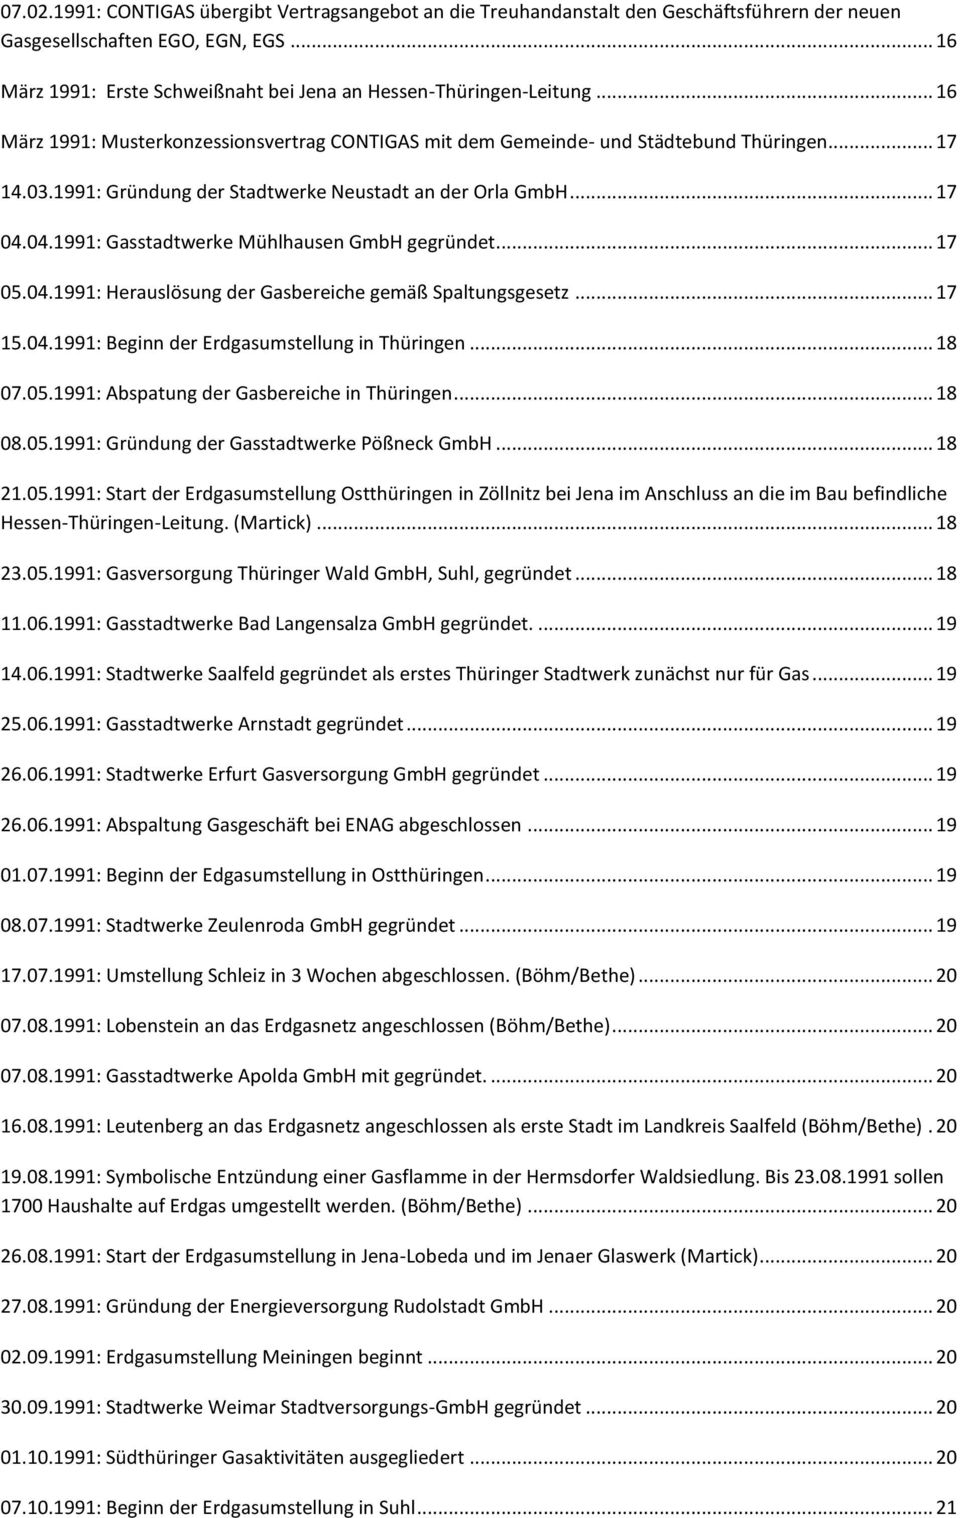 1991: Gründung der Stadtwerke Neustadt an der Orla GmbH... 17 04.04.1991: Gasstadtwerke Mühlhausen GmbH gegründet... 17 05.04.1991: Herauslösung der Gasbereiche gemäß Spaltungsgesetz... 17 15.04.1991: Beginn der Erdgasumstellung in Thüringen.